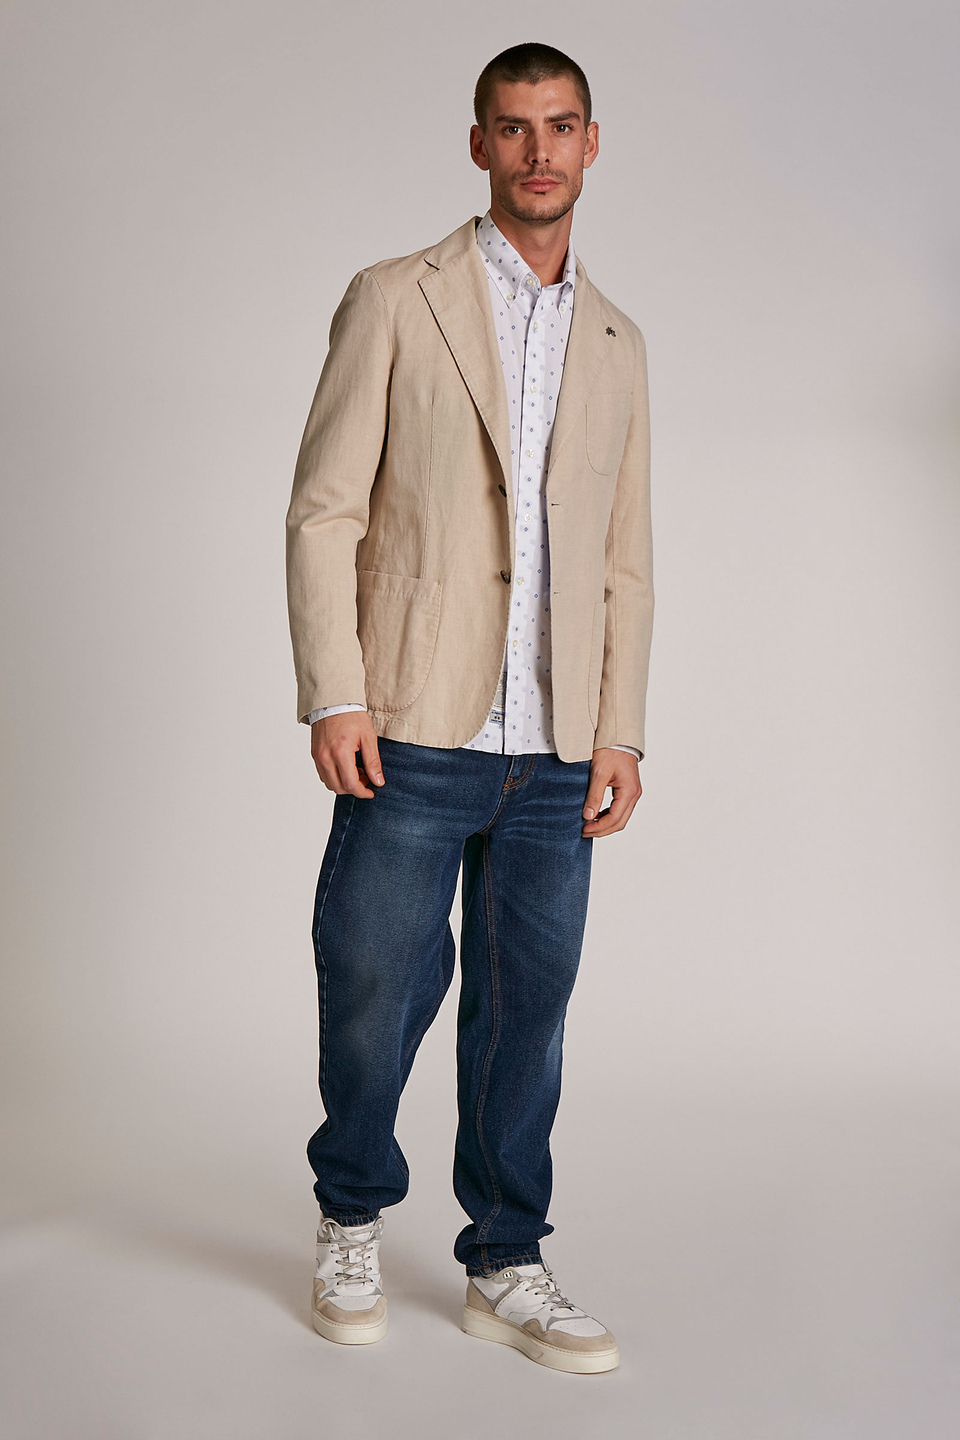 Chaqueta de hombre de mezcla de algodón y lino, modelo blazer, corte regular | La Martina - Official Online Shop